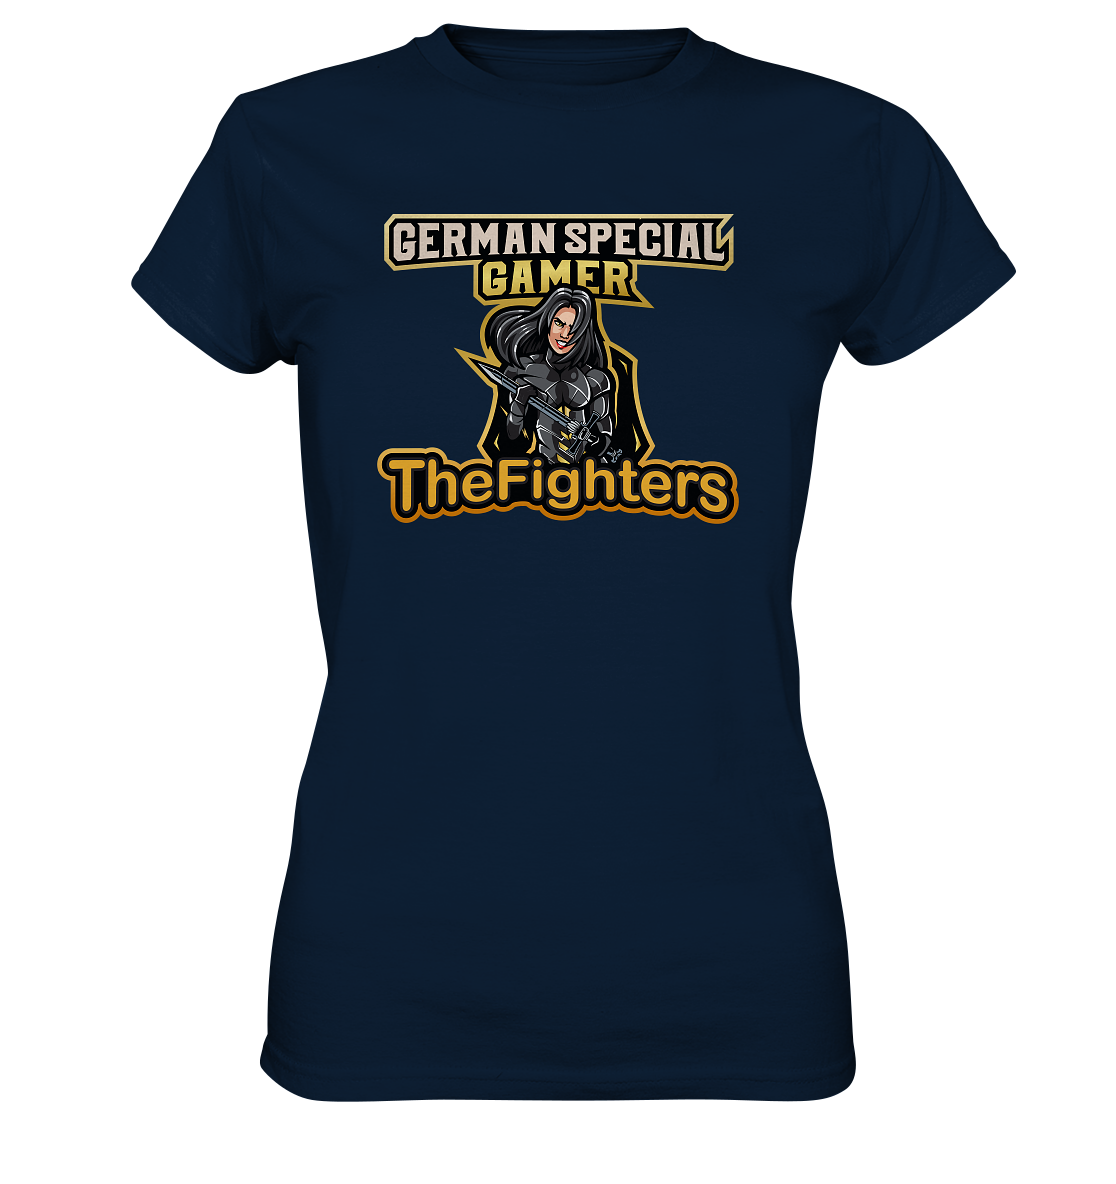 GERMAN SPECIAL GAMER â THE FIGHTERS - Ladies Basic Shirt